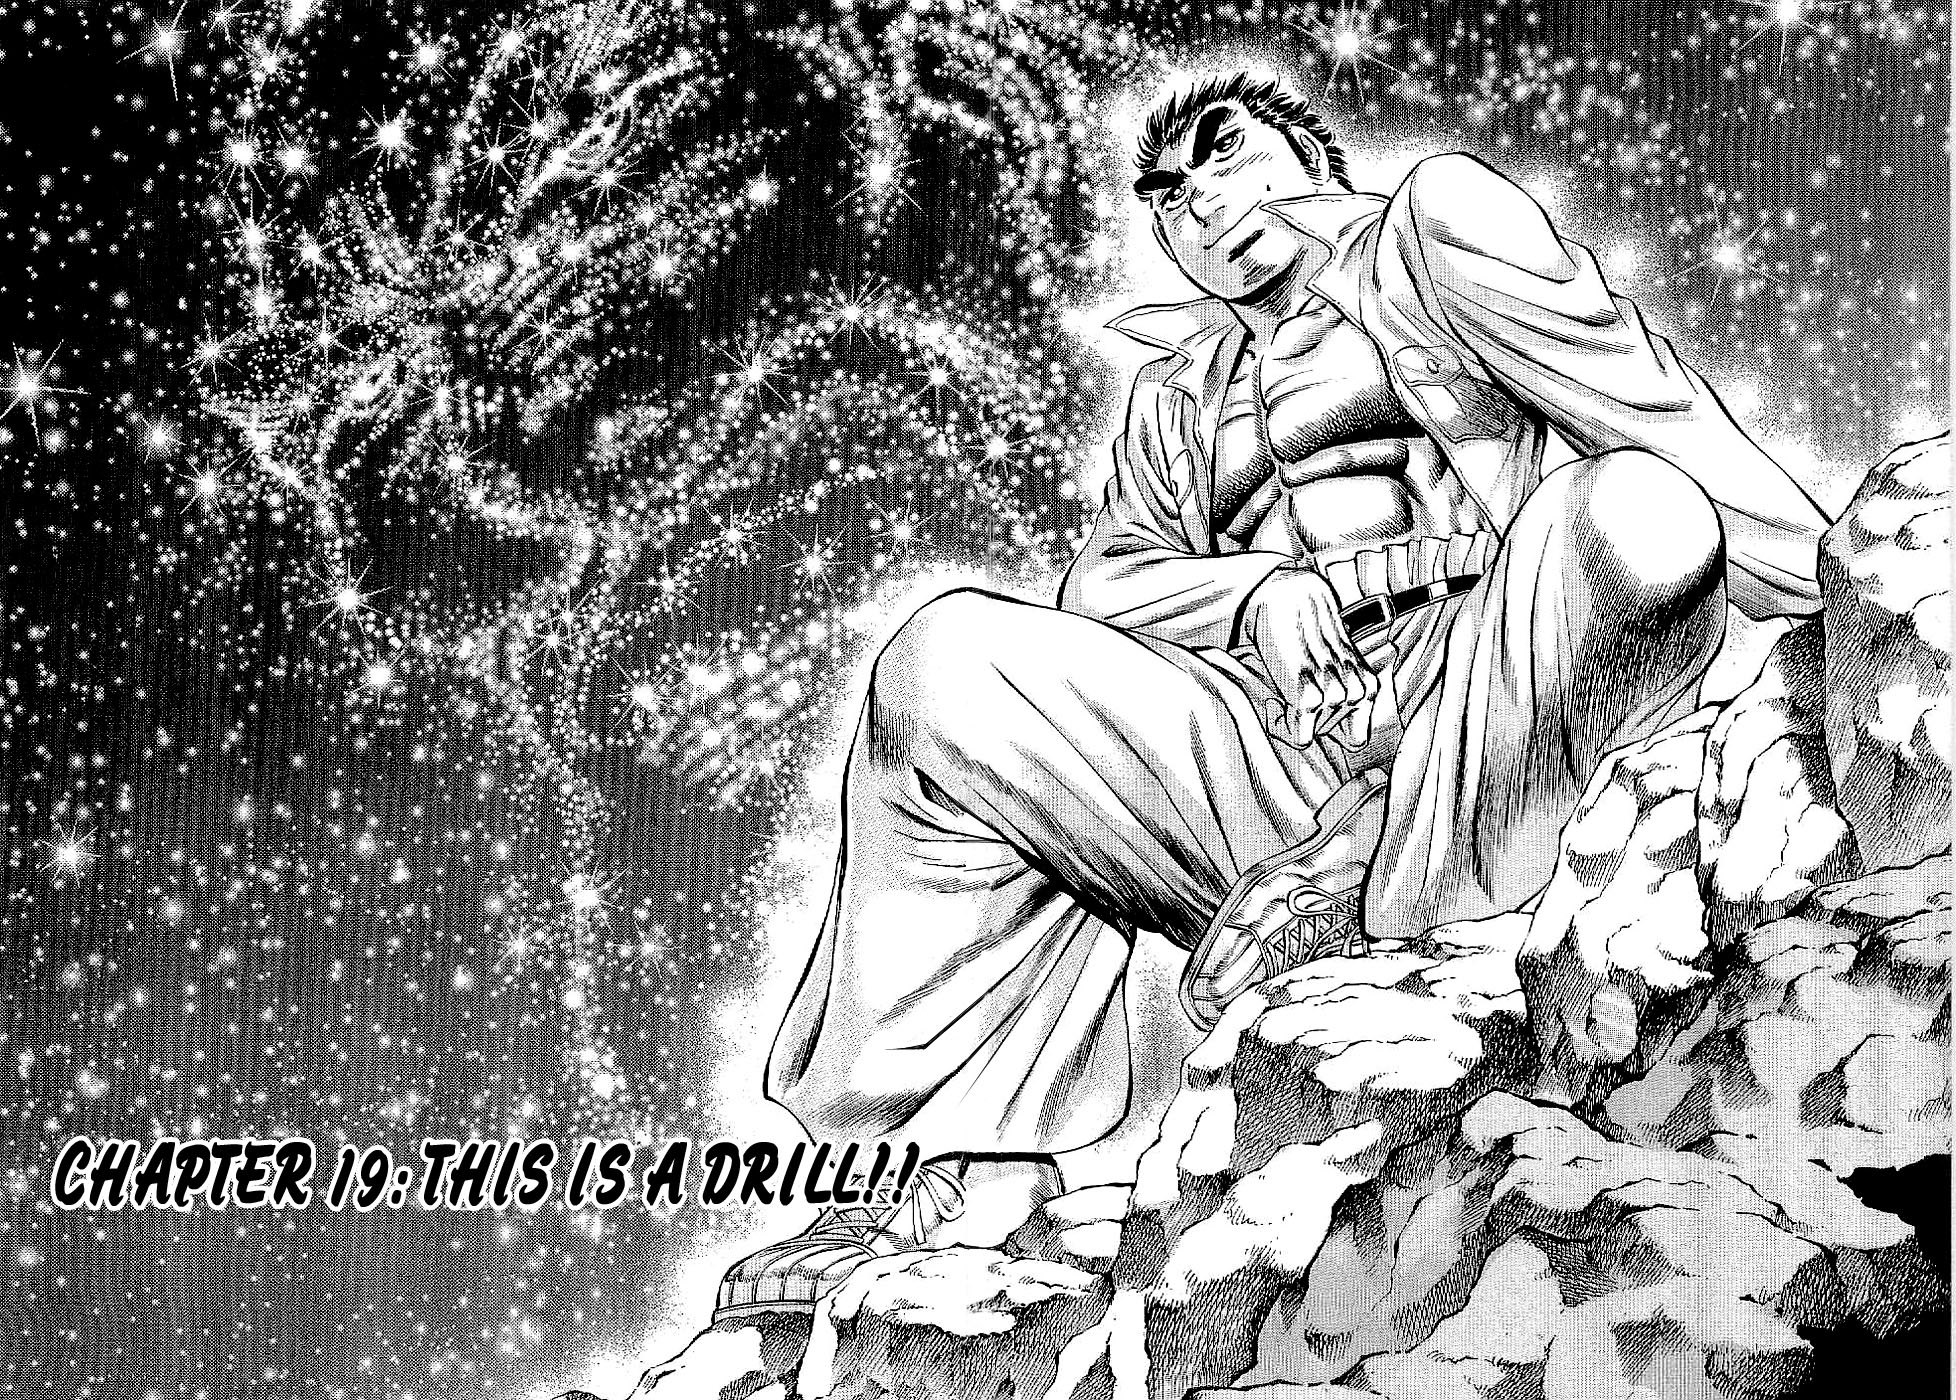 Tenkamusou Edajima Heihachi Den Vol.4 Ch.19